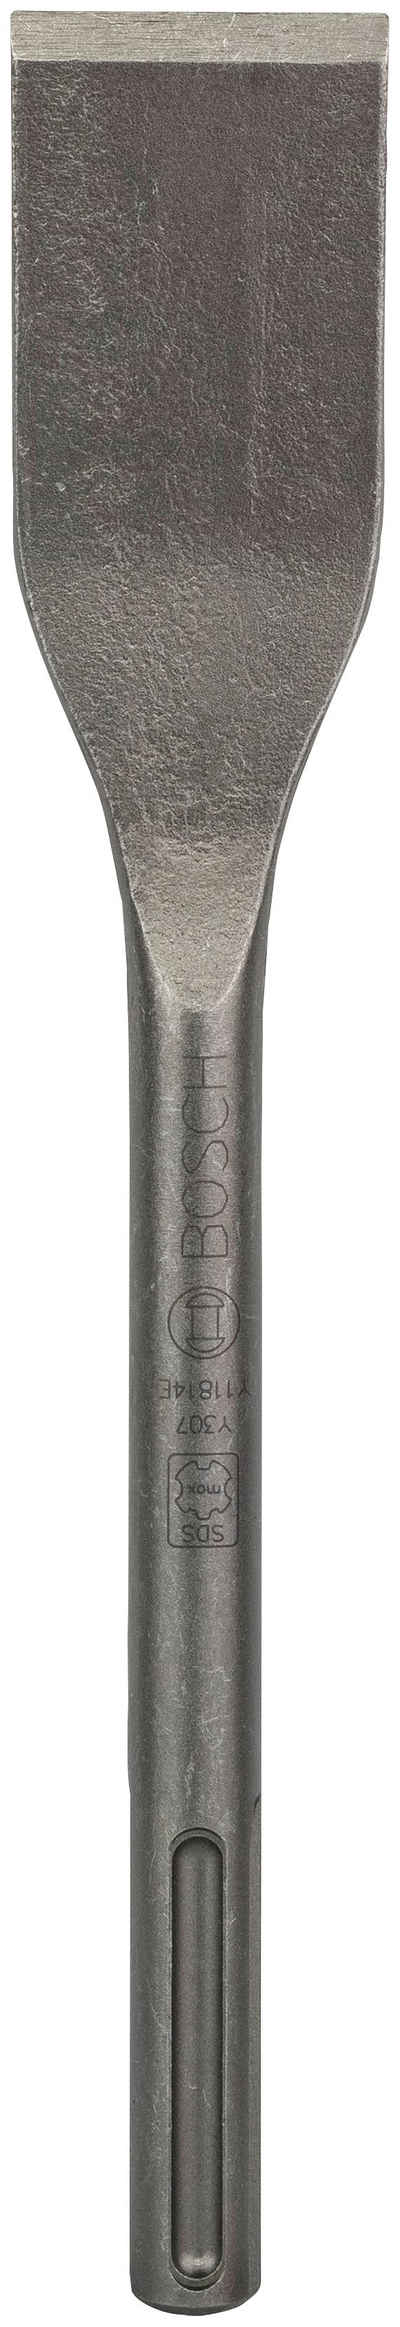 Bosch Professional Flachmeißel, 300 in mm, für SDS-Max, SDS max, 300x50 mm, für Fliesen